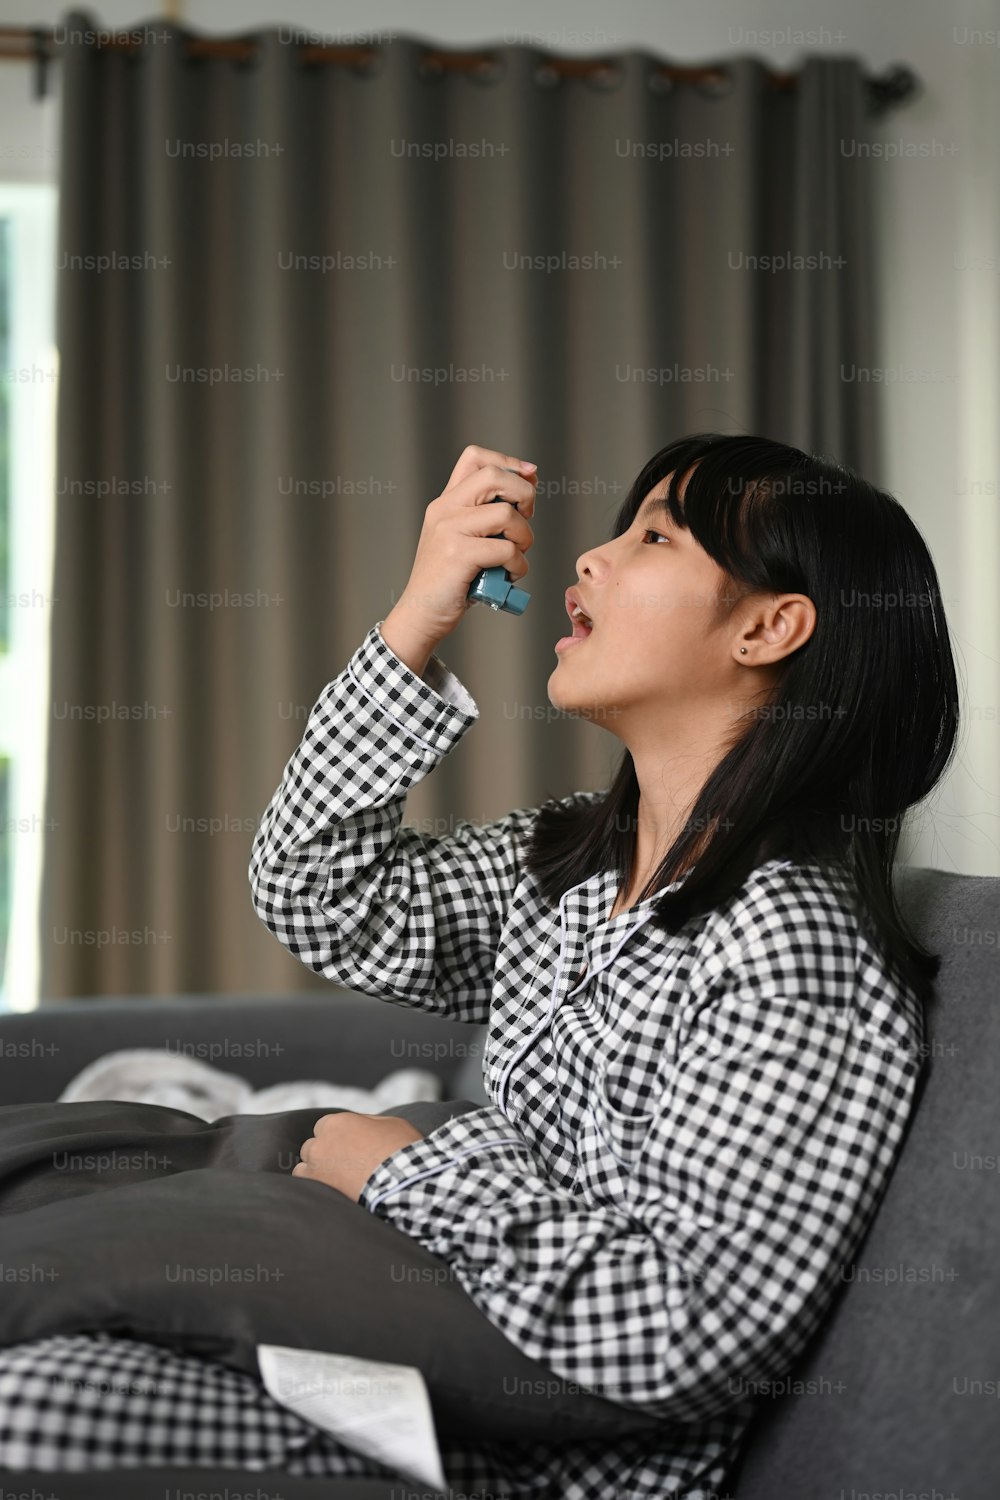 Imagínese a una joven usando un inhalador por sí misma para el asma mientras está sentada en el sofá de su casa.